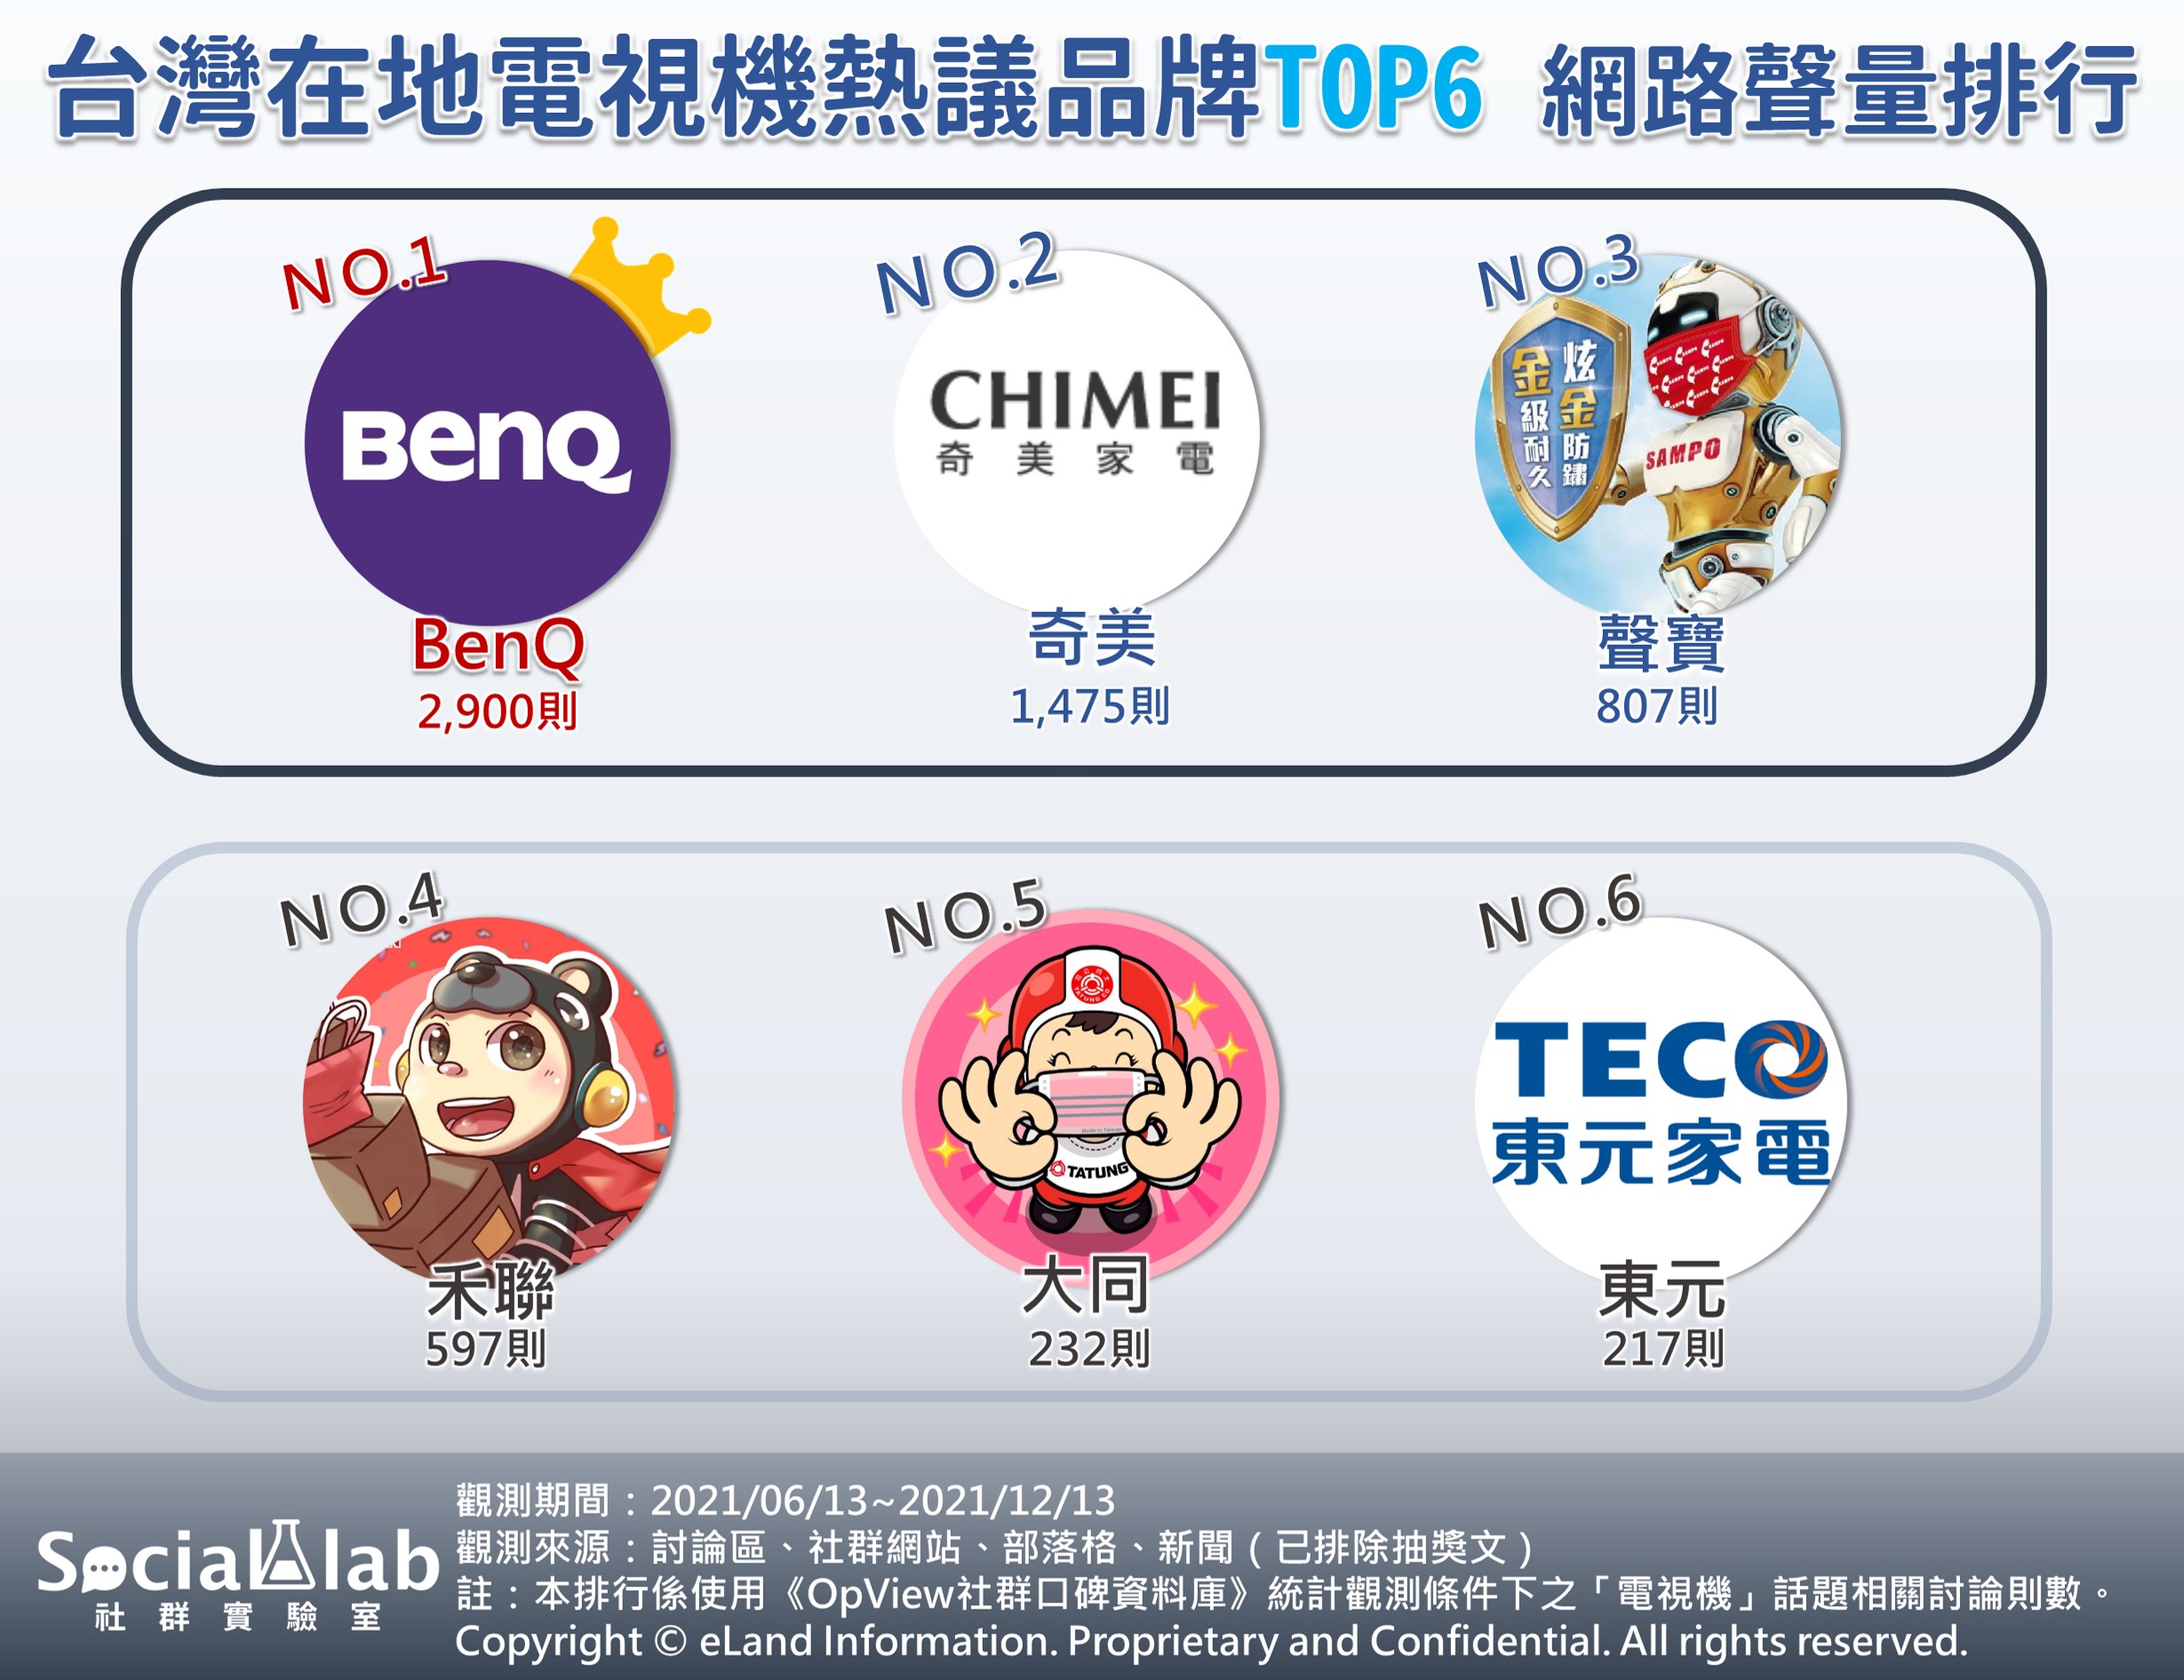 台灣在地電視機熱議品牌TOP6網路聲量排行